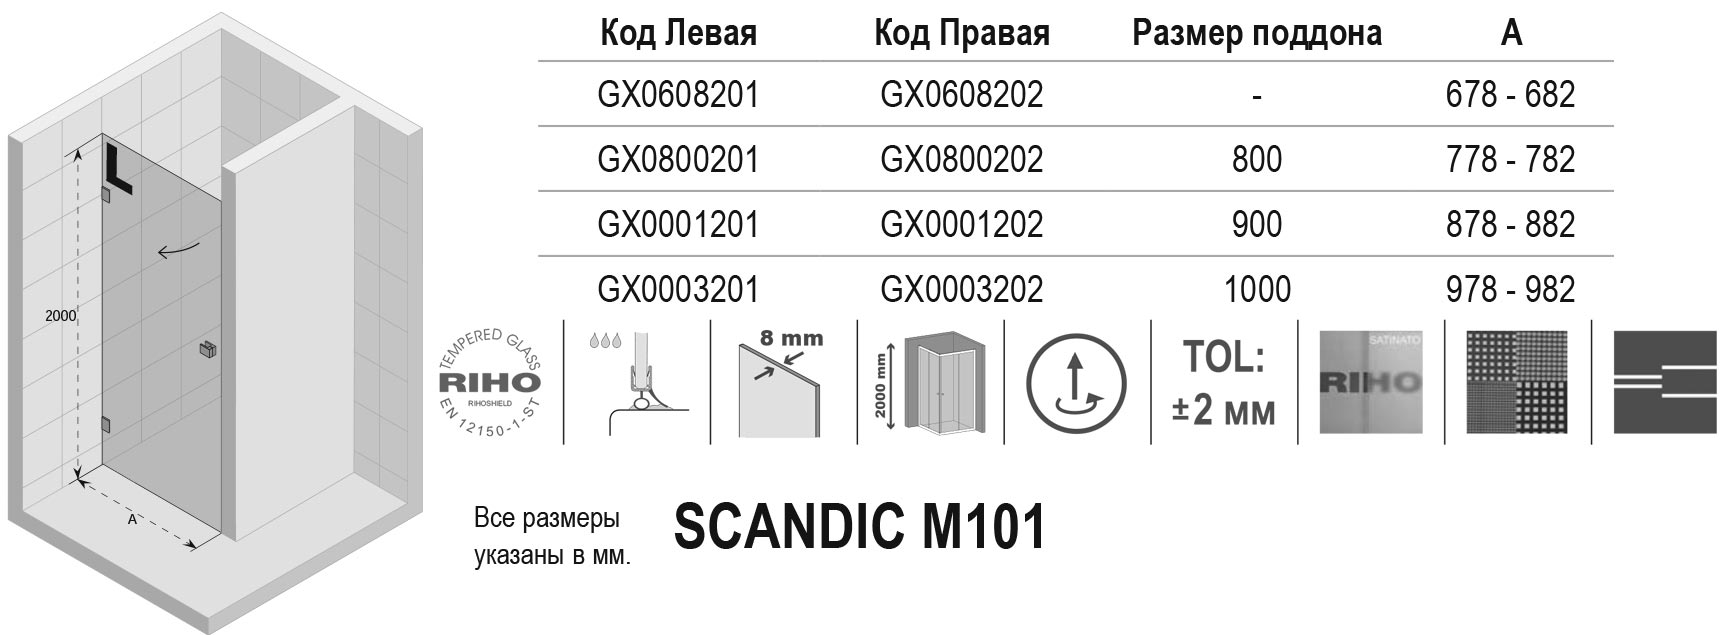 Чертёж Riho Scandic M101 GX0003201